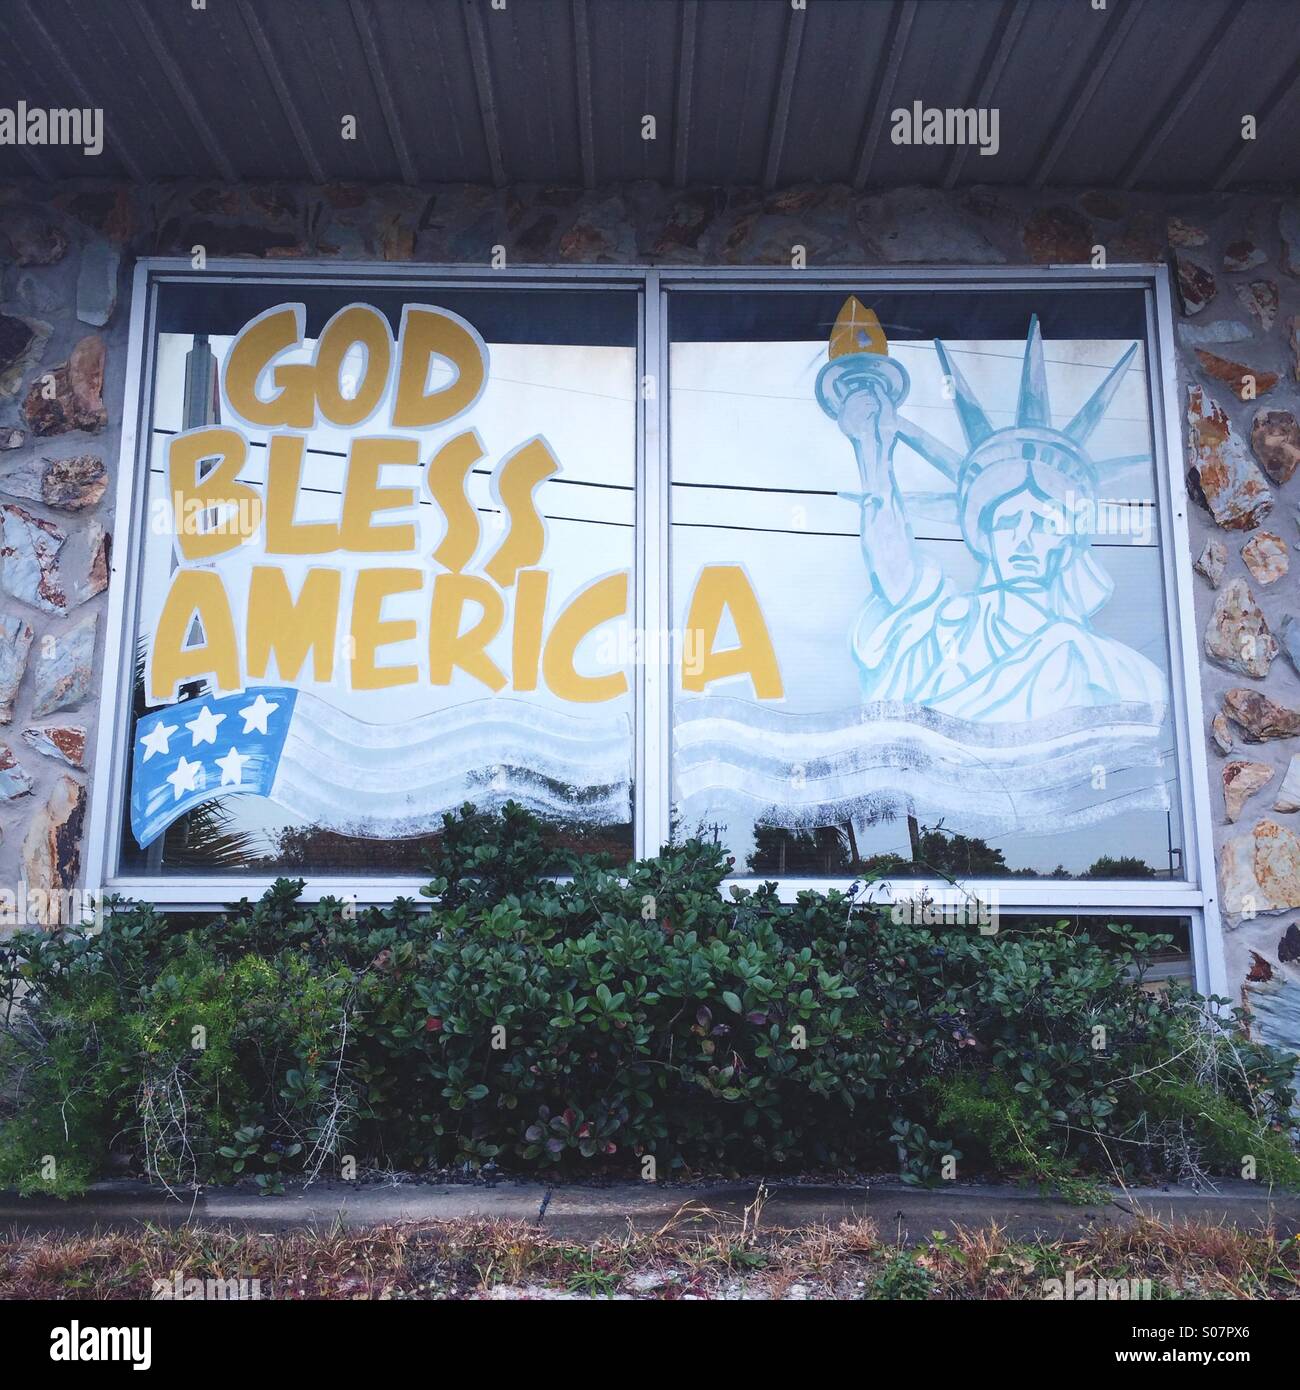 "Dieu bénisse l'Amérique" lit le fading peintes dans une vitrine, avec une image de la Statue de la liberté. Panama City Beach, Floride, USA. Banque D'Images